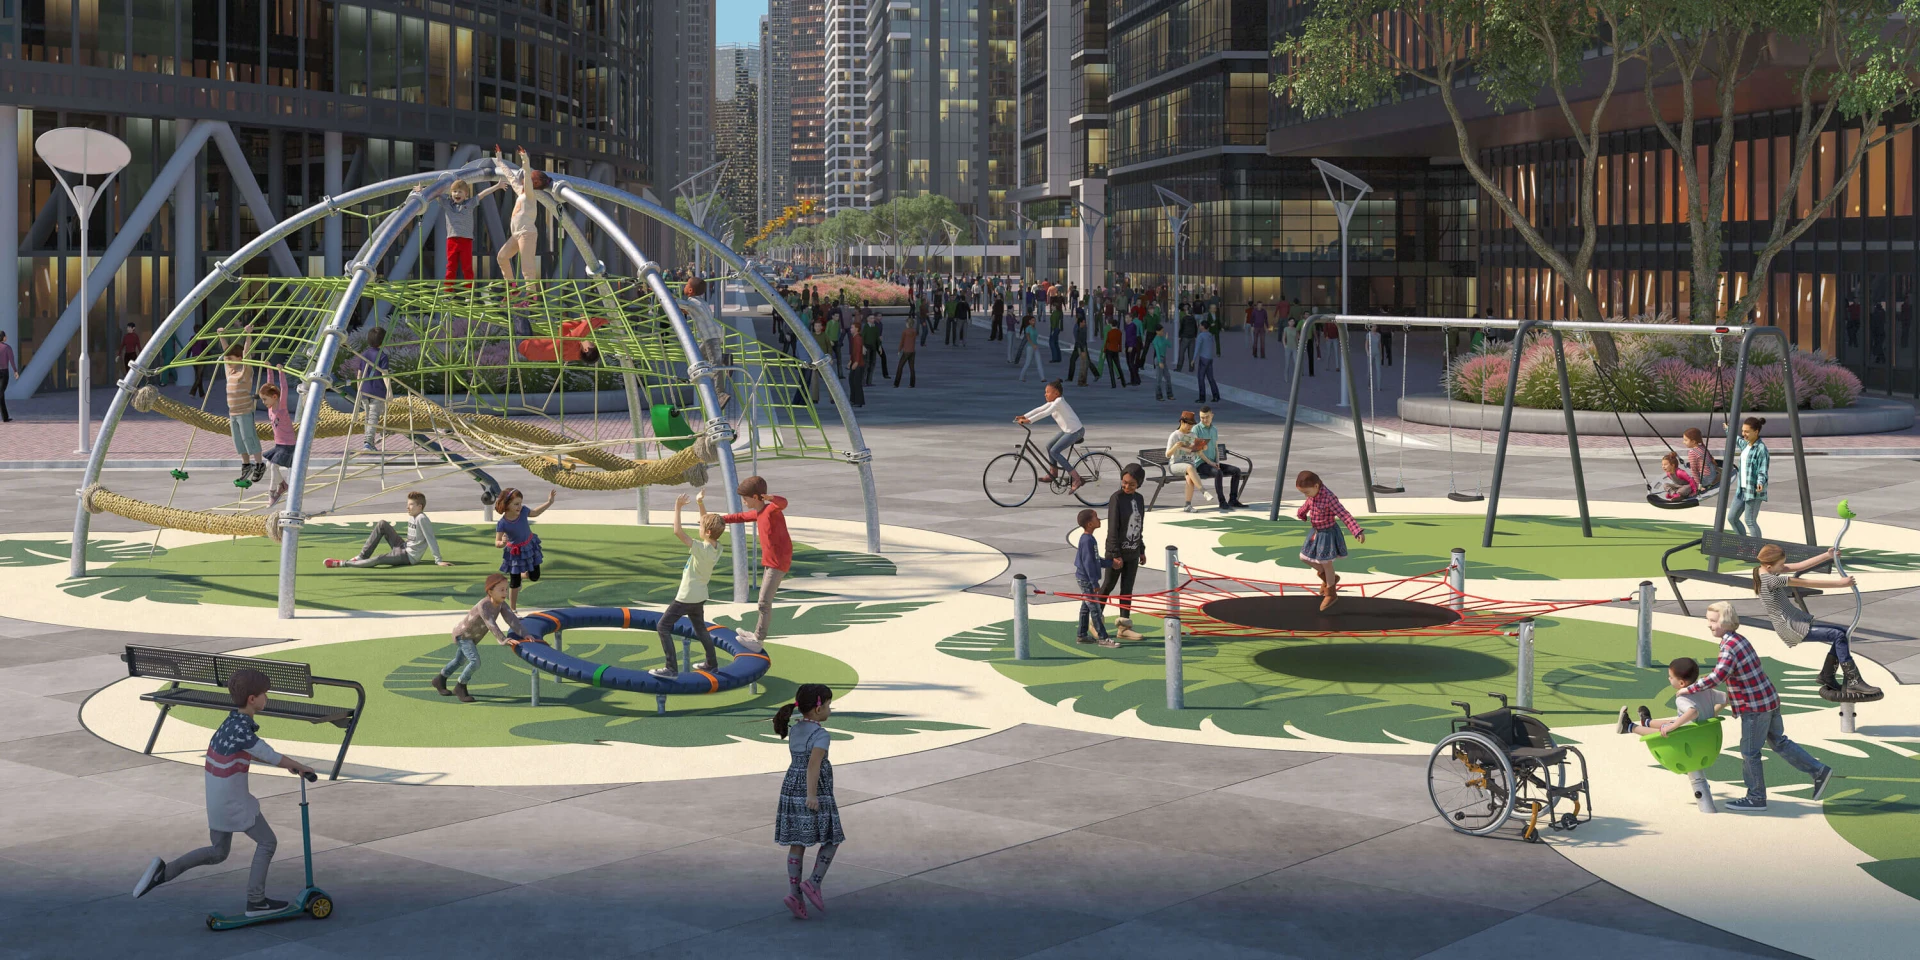 Idea de diseño de un parque infantil de cuerdas en pleno centro urbano